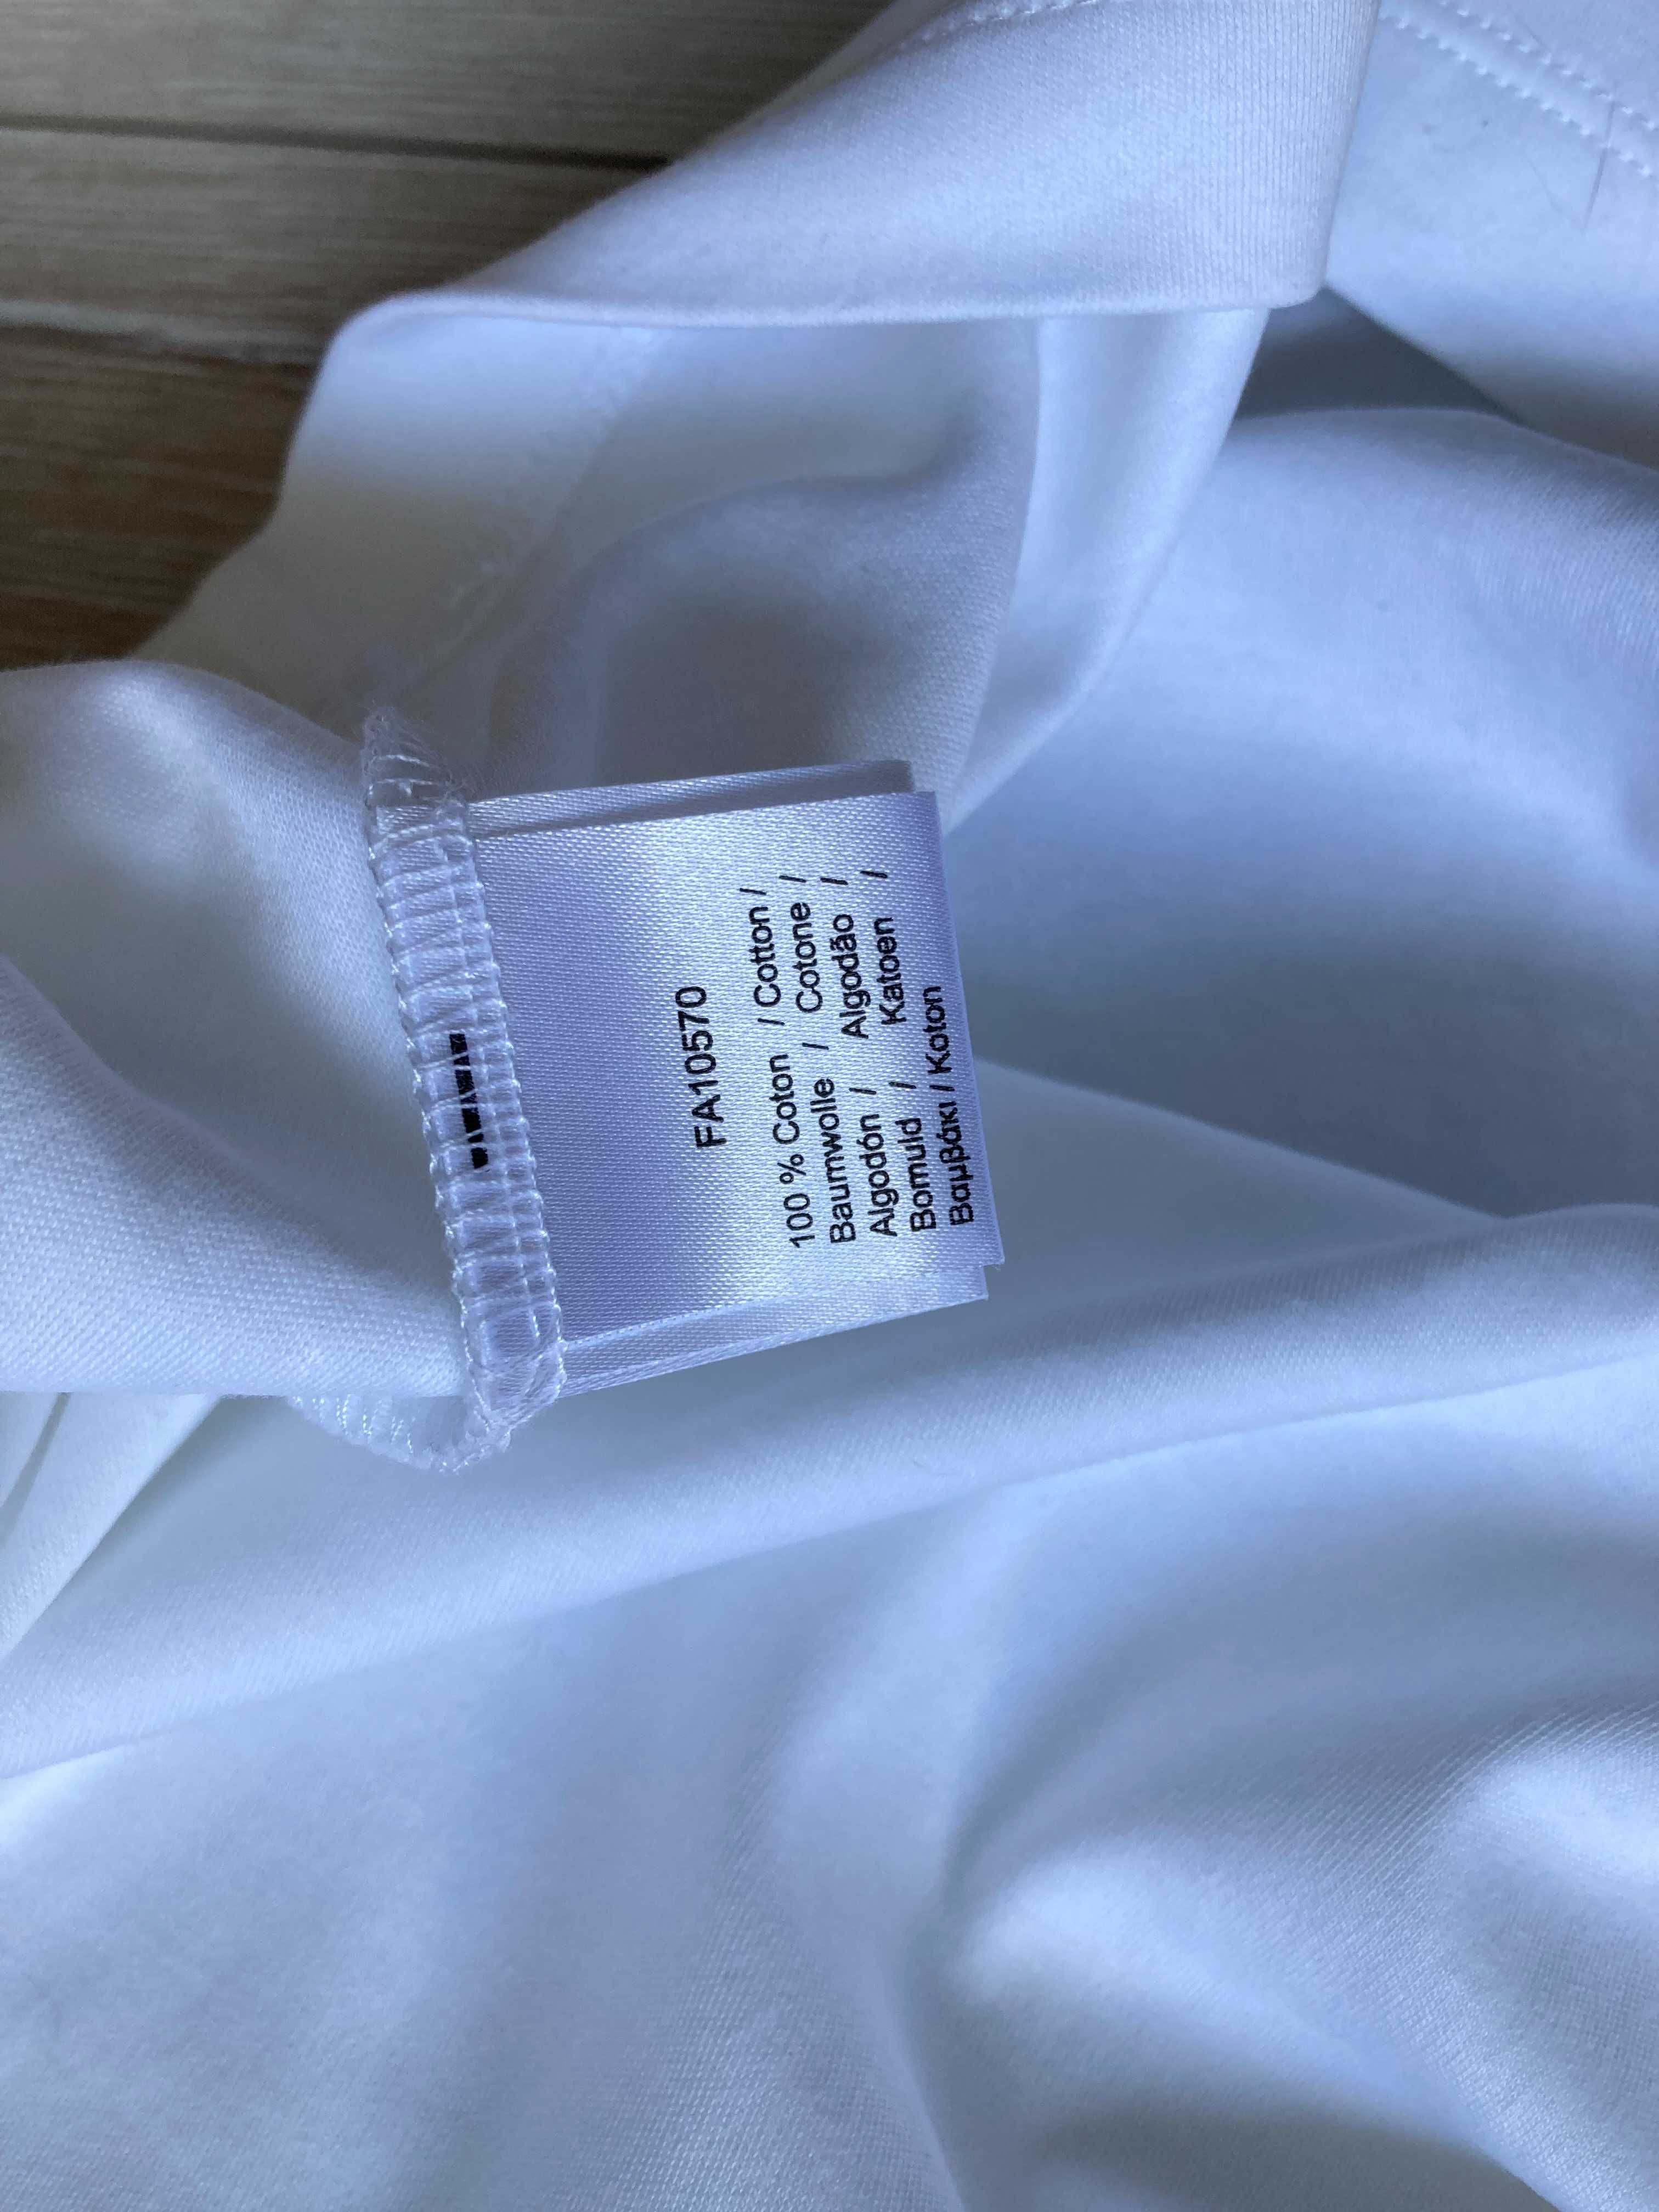 Lacoste Regular Fit Soft Cotton мъжка поло тениска размер L